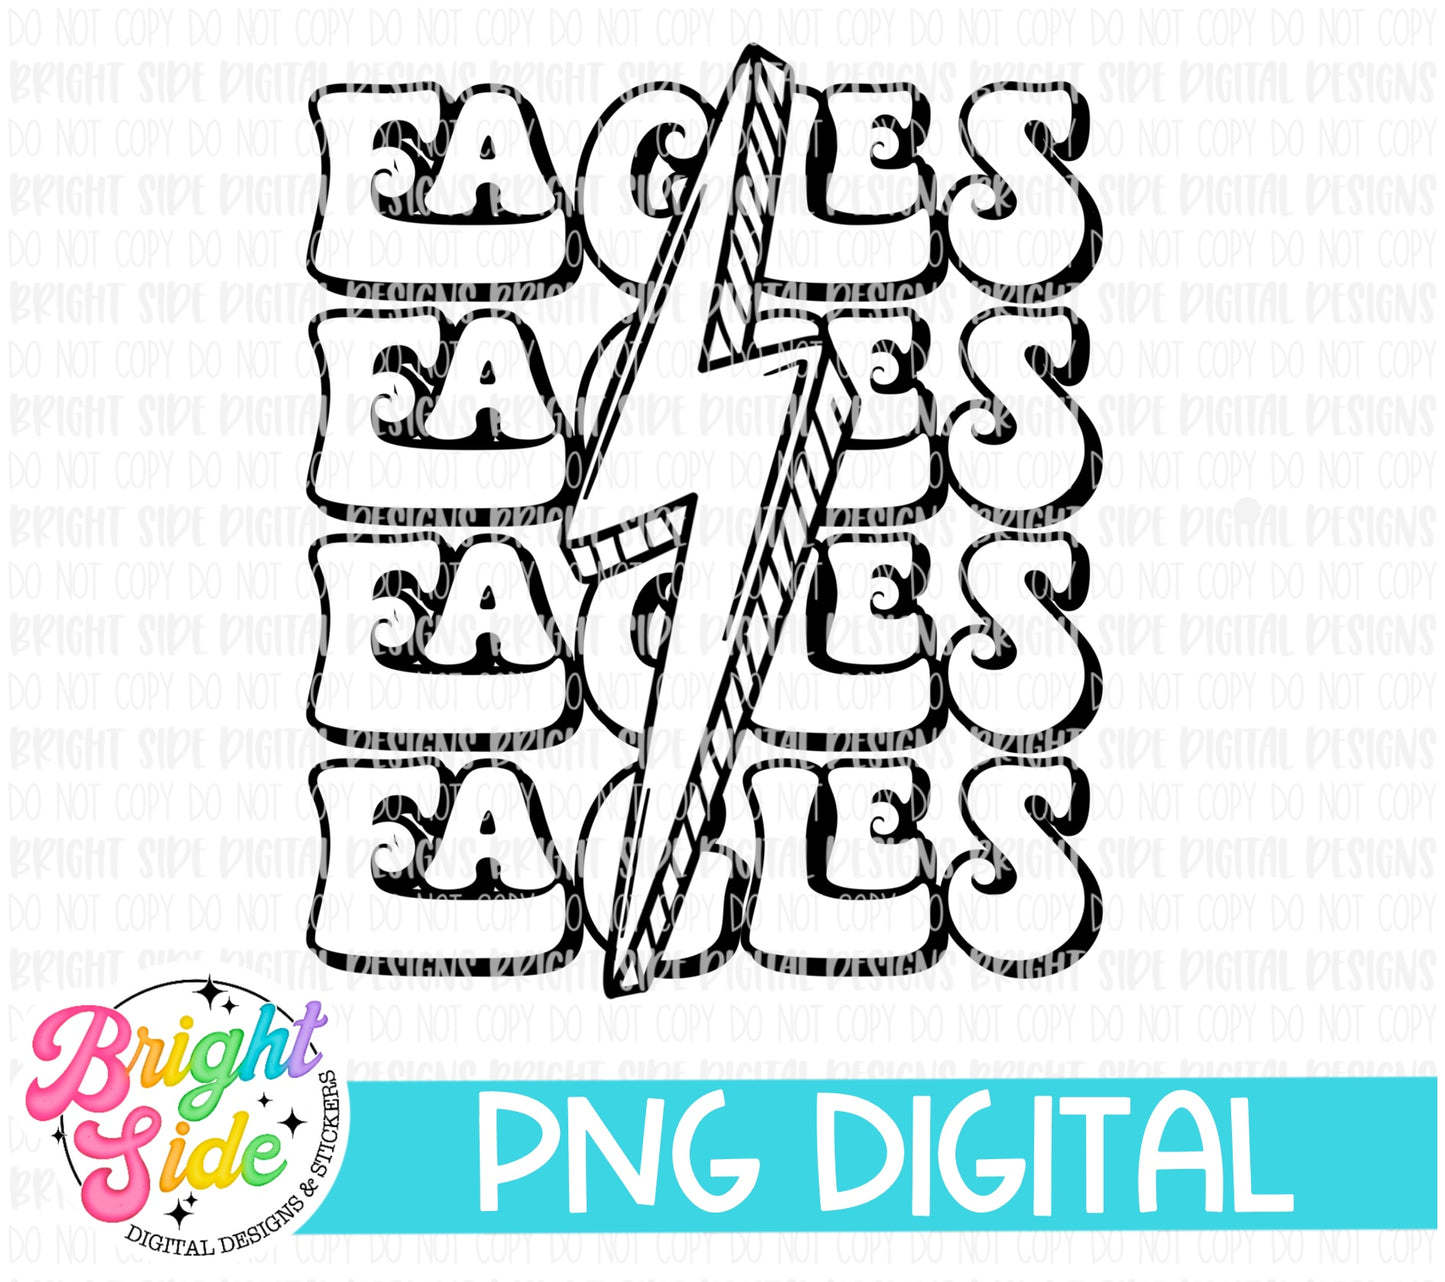 Eagles - single colored School mascot design